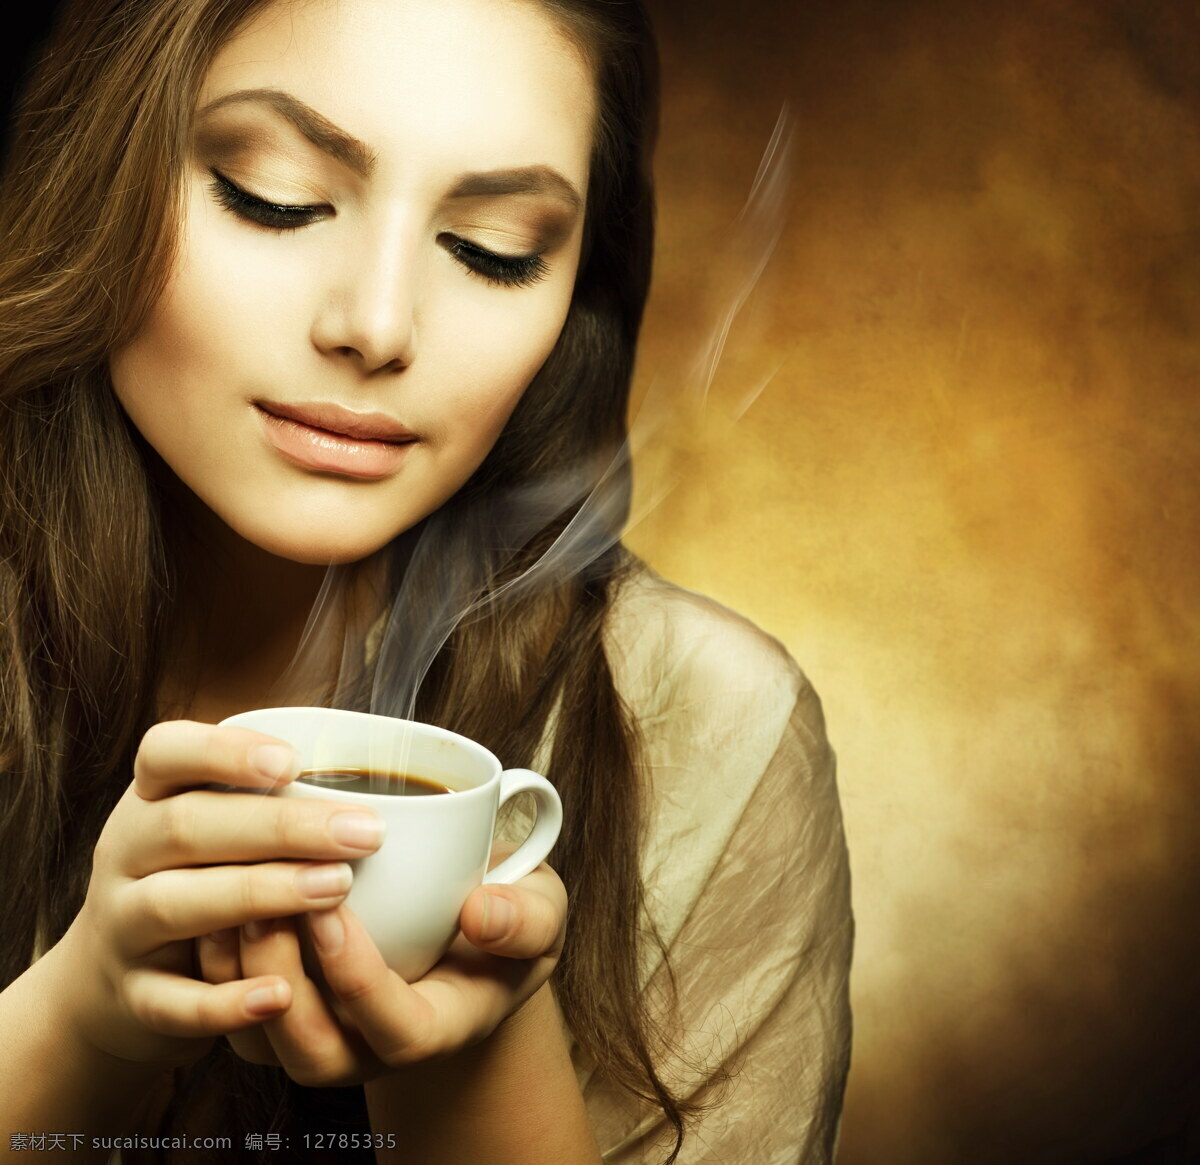 看着 咖啡杯 美女图片 喝咖啡 享受 性感 气质 品质生活 美女 女人 人物图片